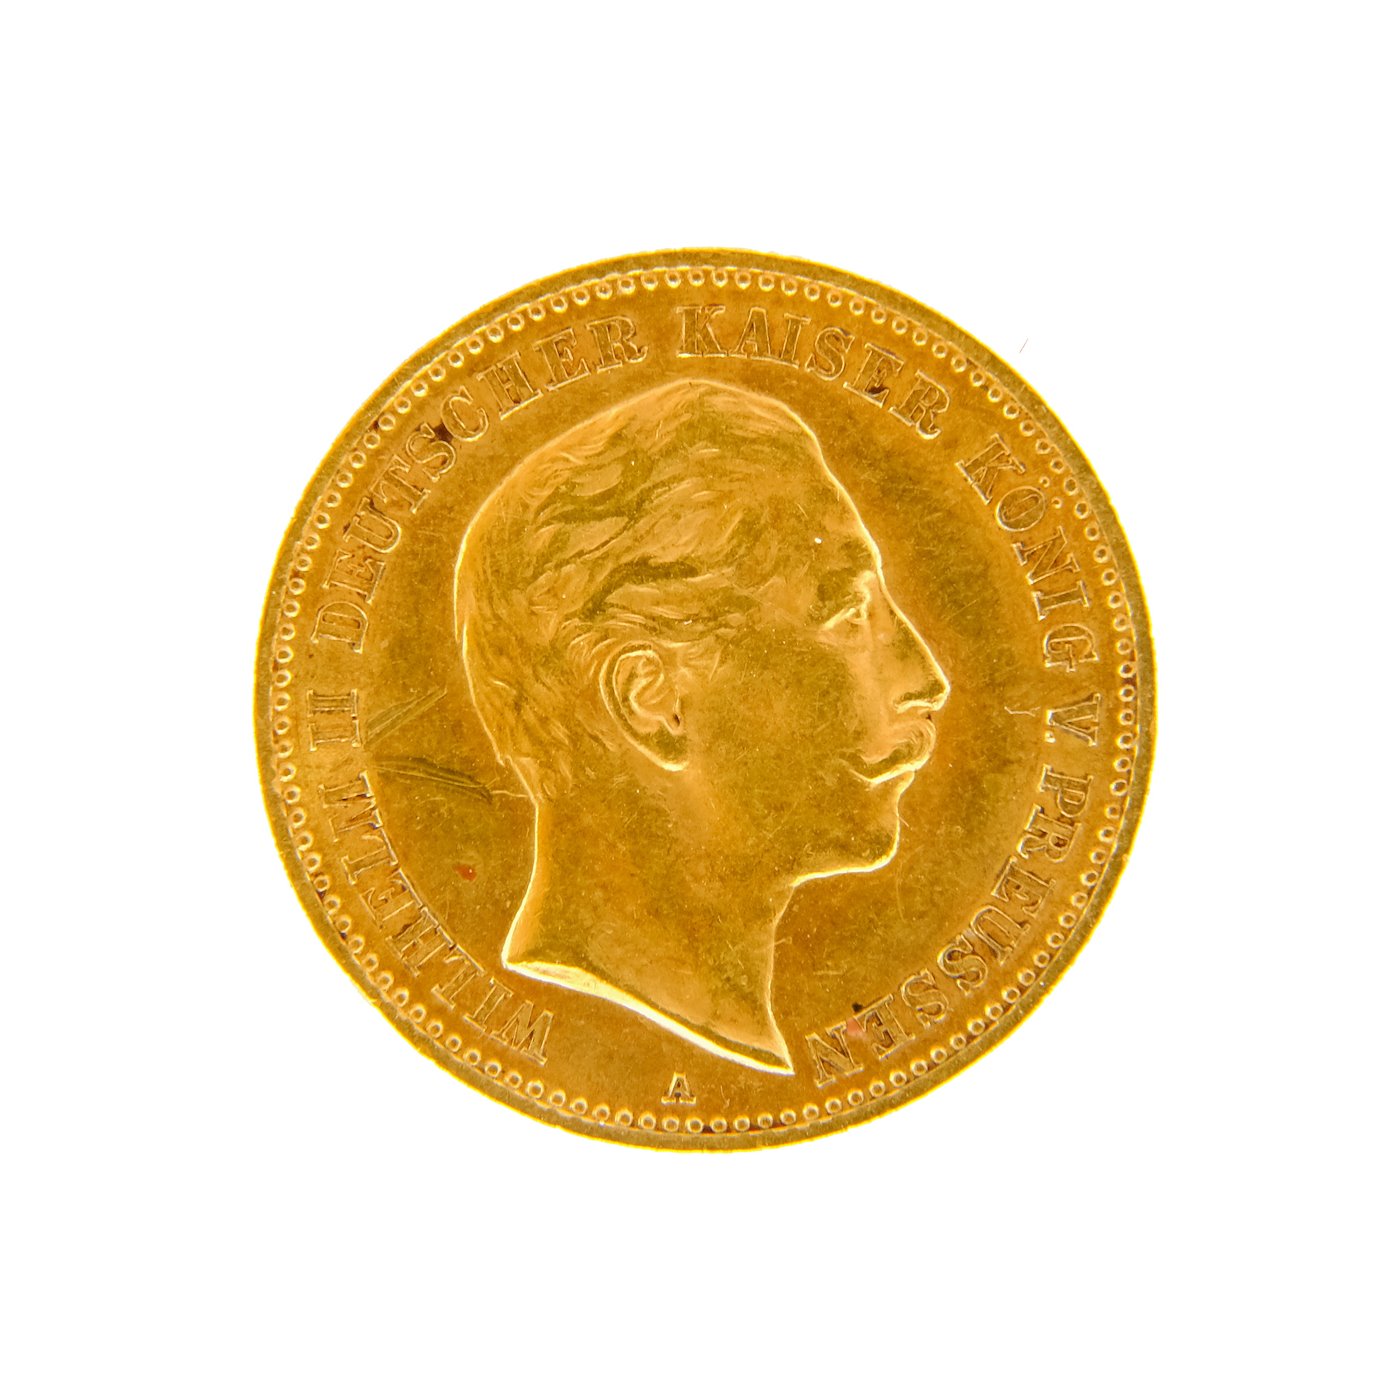 .. - Zlatá 10 Marka 1903 A císař Vilém II. Prusko, zlato 900/1000, hmotnost hrubá 3,982g